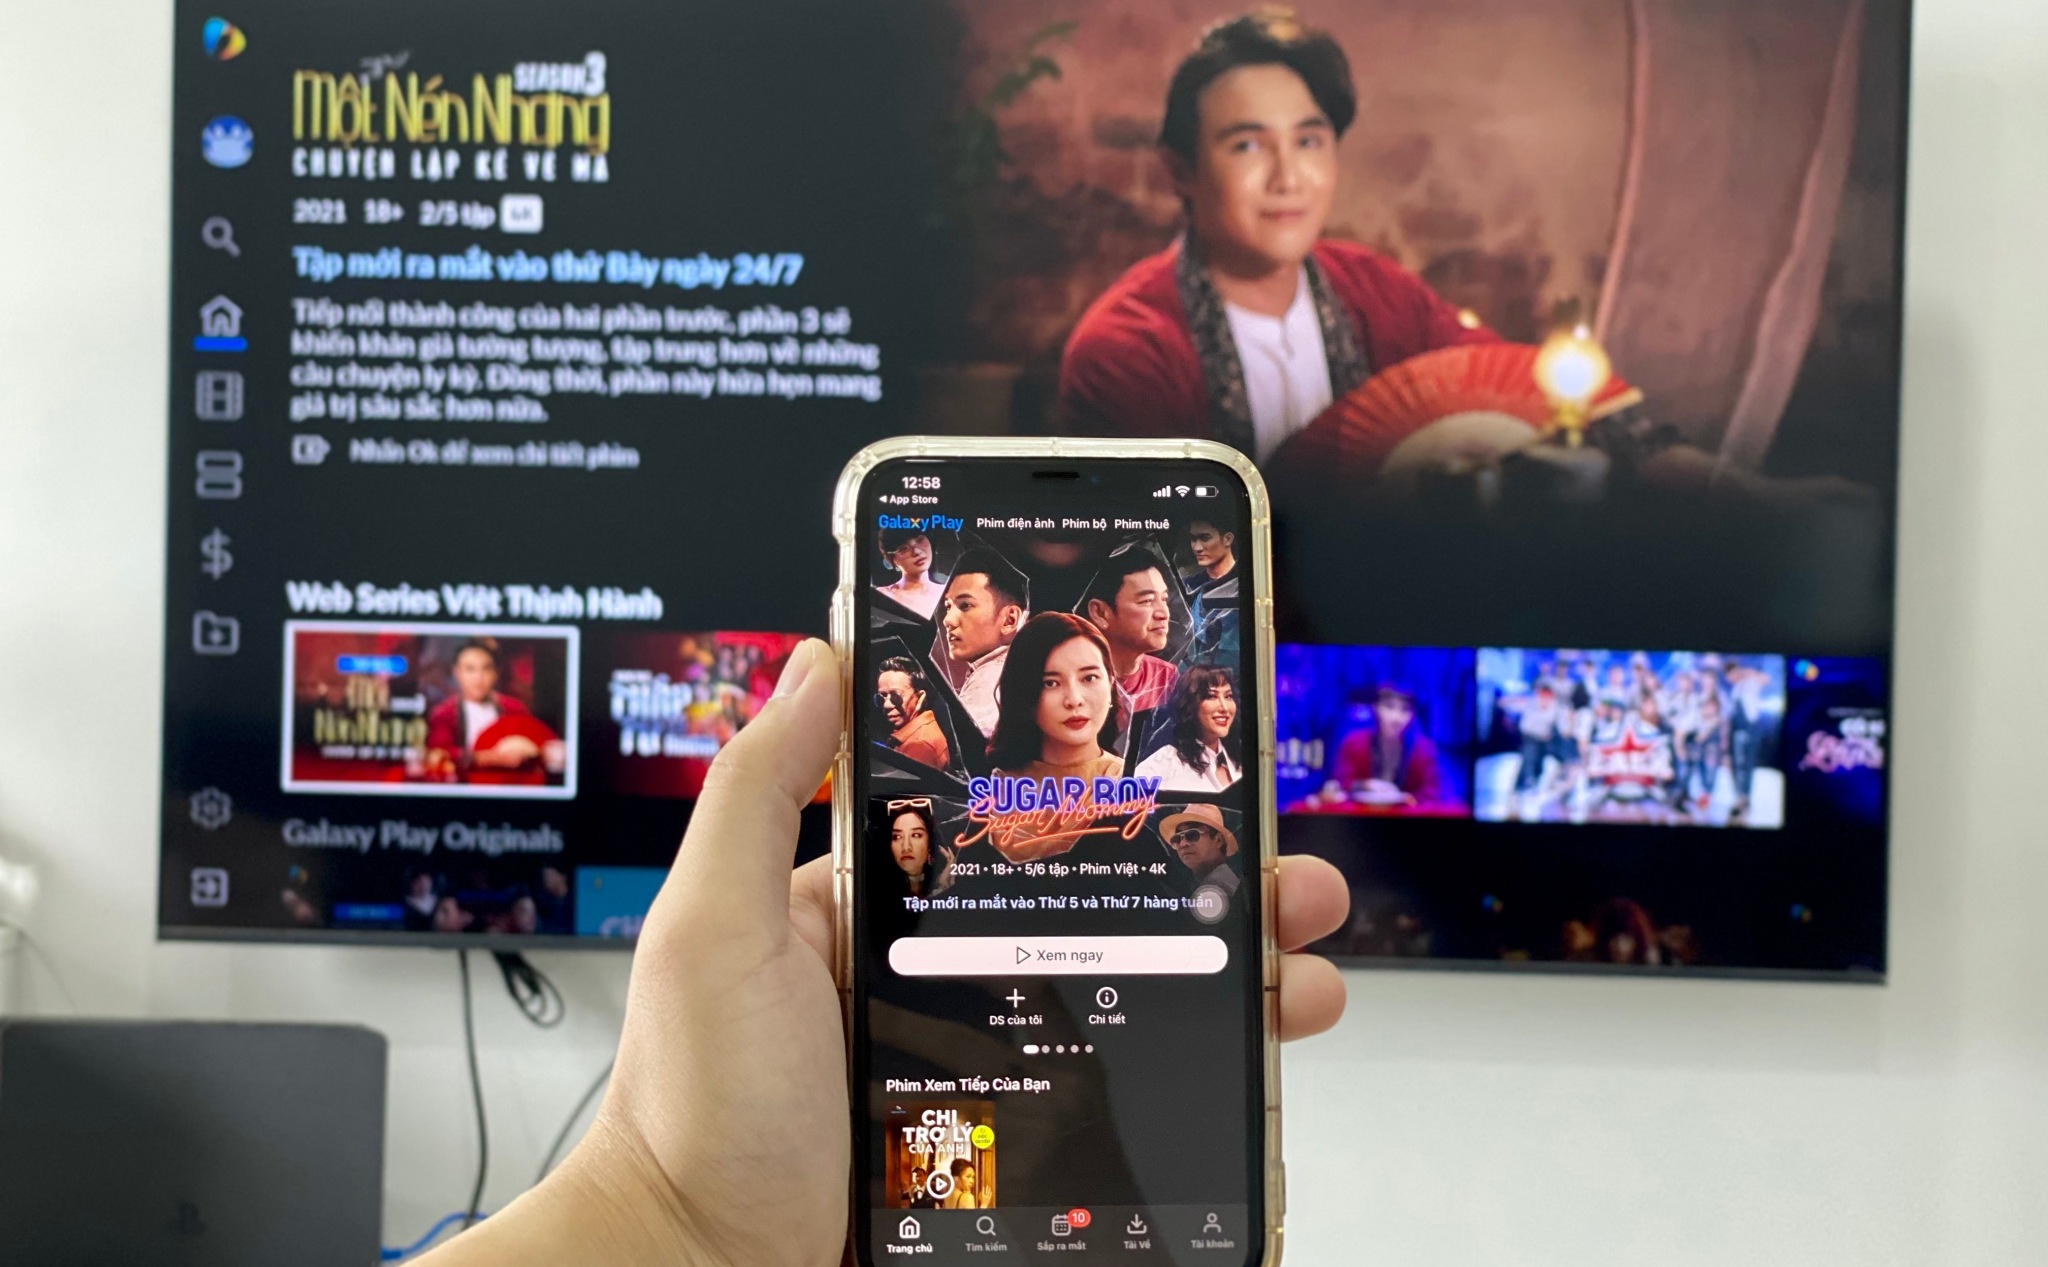 [QC] Trải nghiệm Galaxy Play: Kho phim Việt chiếu rạp khổng lồ cùng nhiều phim bộ độc quyền hấp dẫn